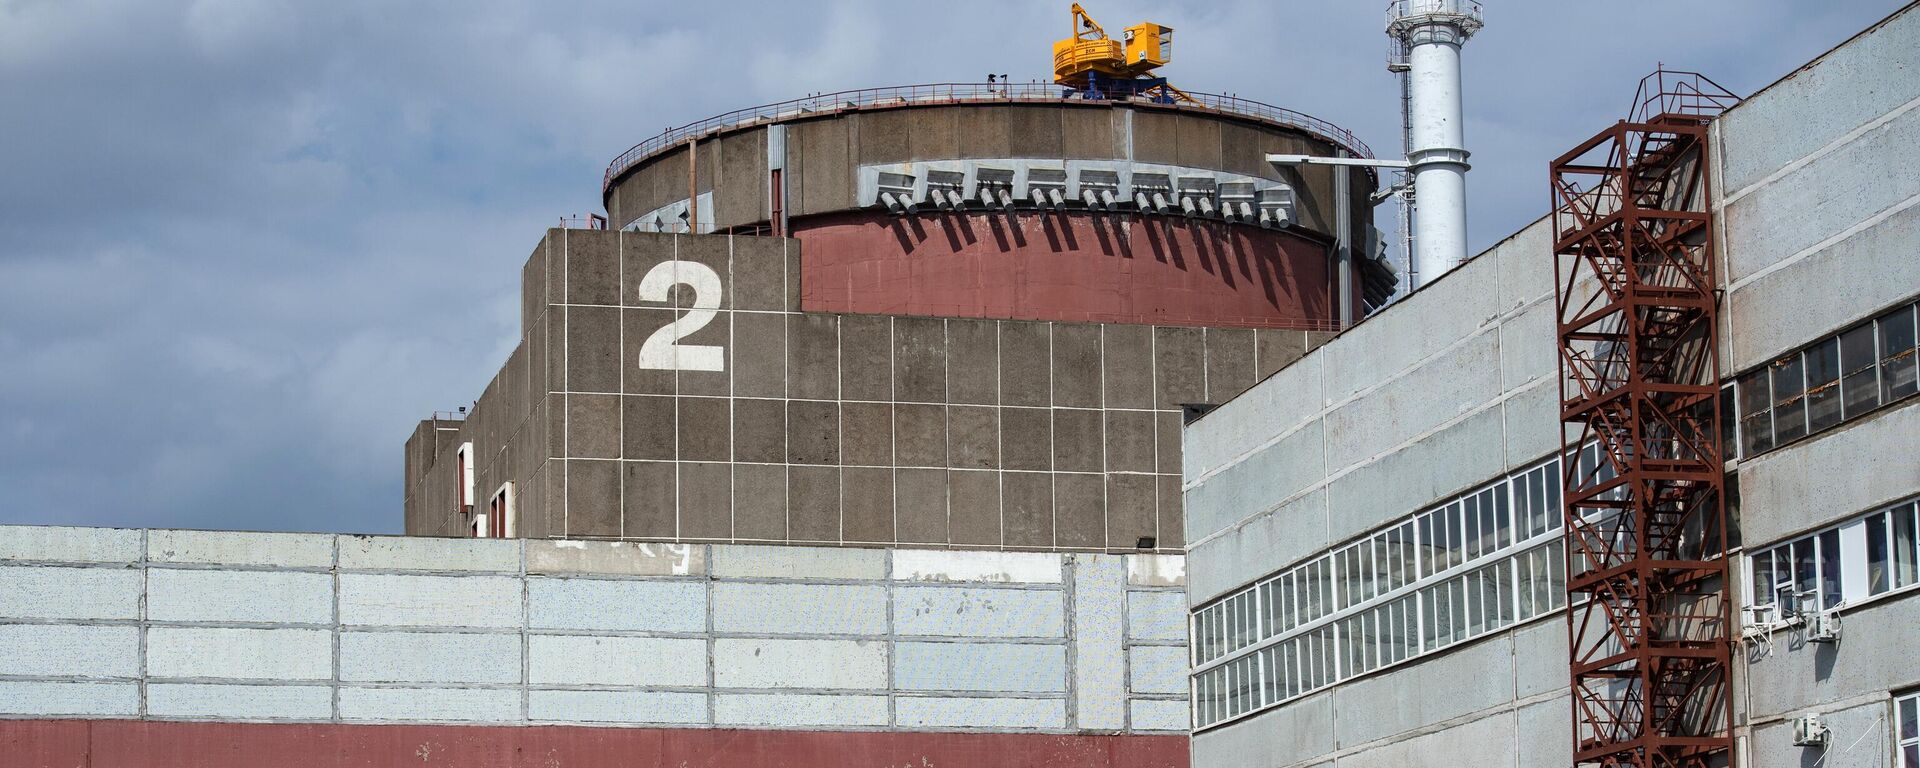 Энергоблок №2 Запорожской АЭС в Энергодаре, 5 мая 2022 года - Sputnik Латвия, 1920, 12.08.2022